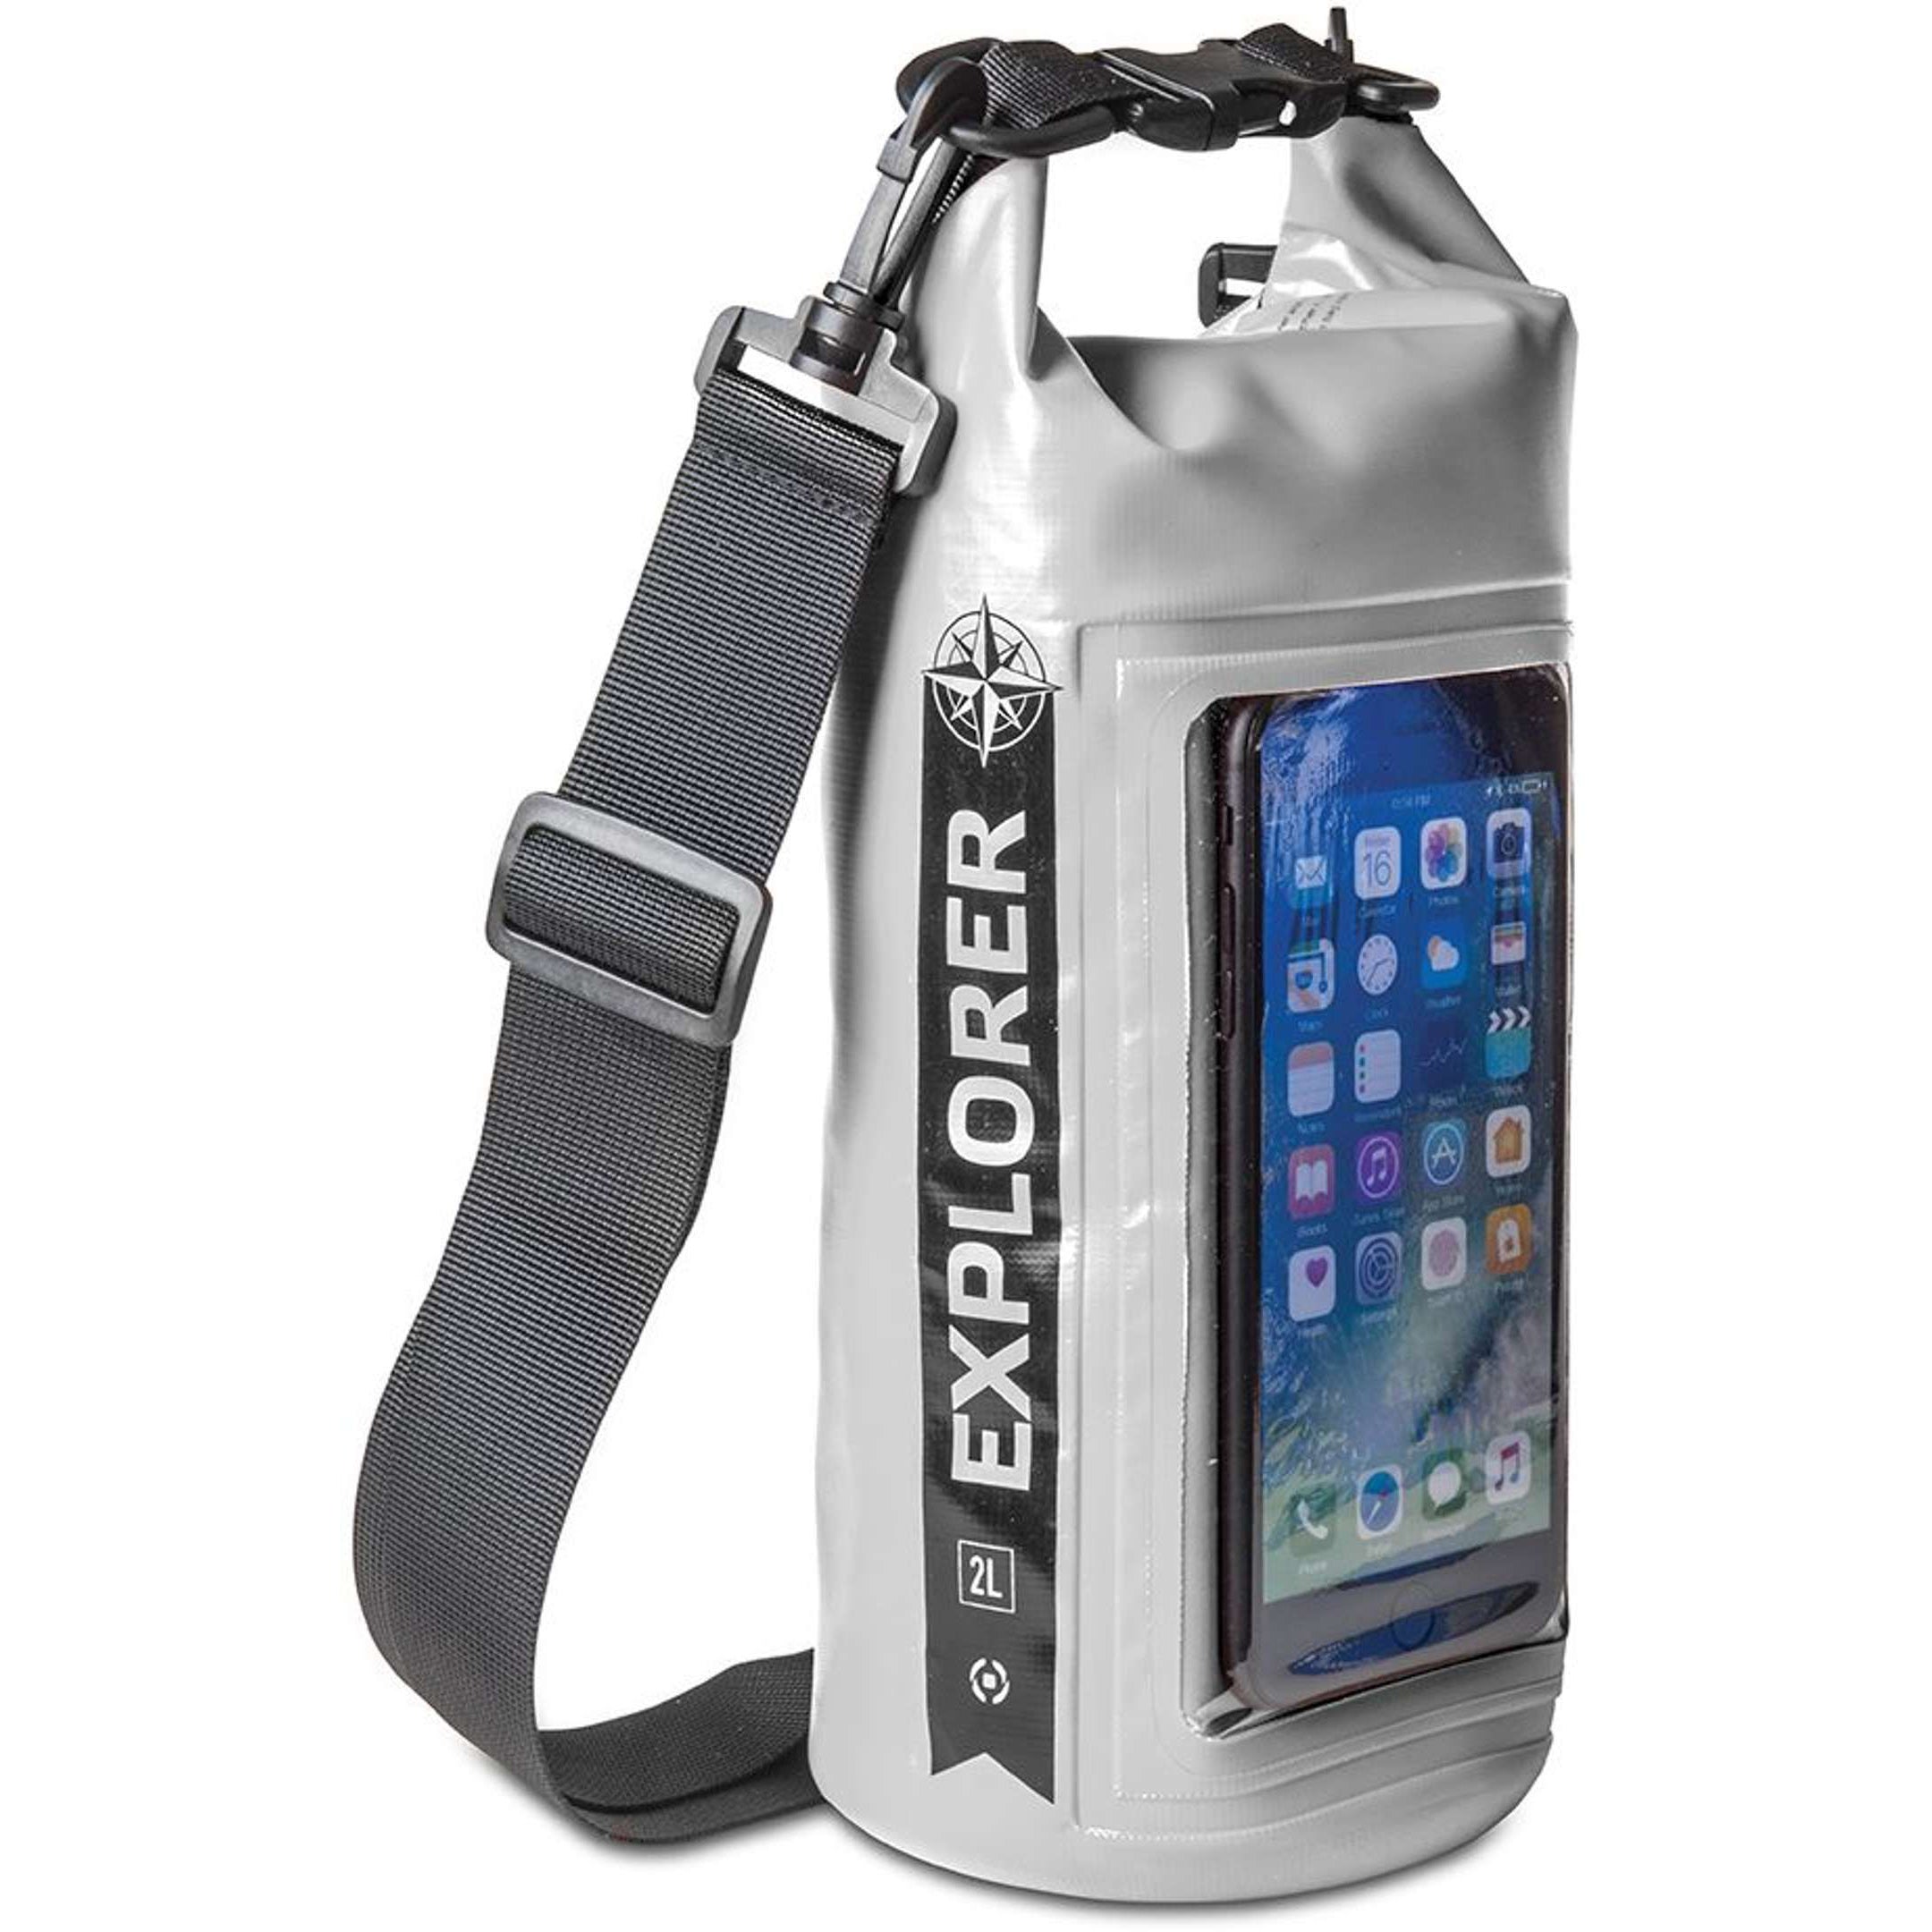 Rugzak Explorer 2 liter van Celly grijs zijaanzicht met smartphone in de houder